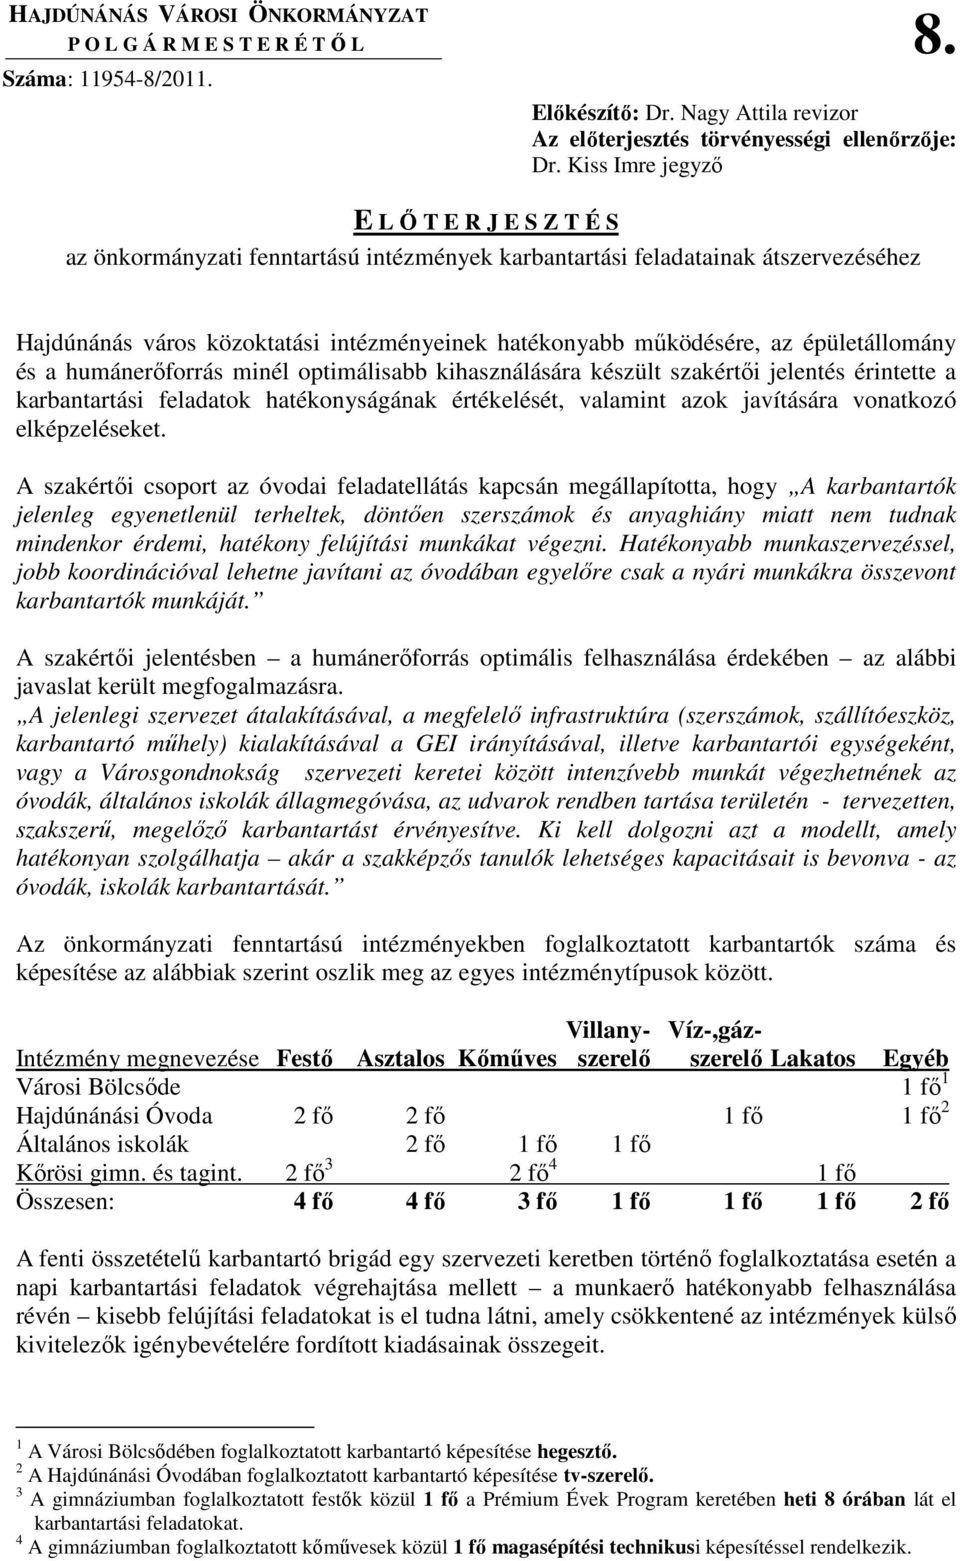 épületállomány és a humánerıforrás minél optimálisabb kihasználására készült szakértıi jelentés érintette a karbantartási feladatok hatékonyságának értékelését, valamint azok javítására vonatkozó